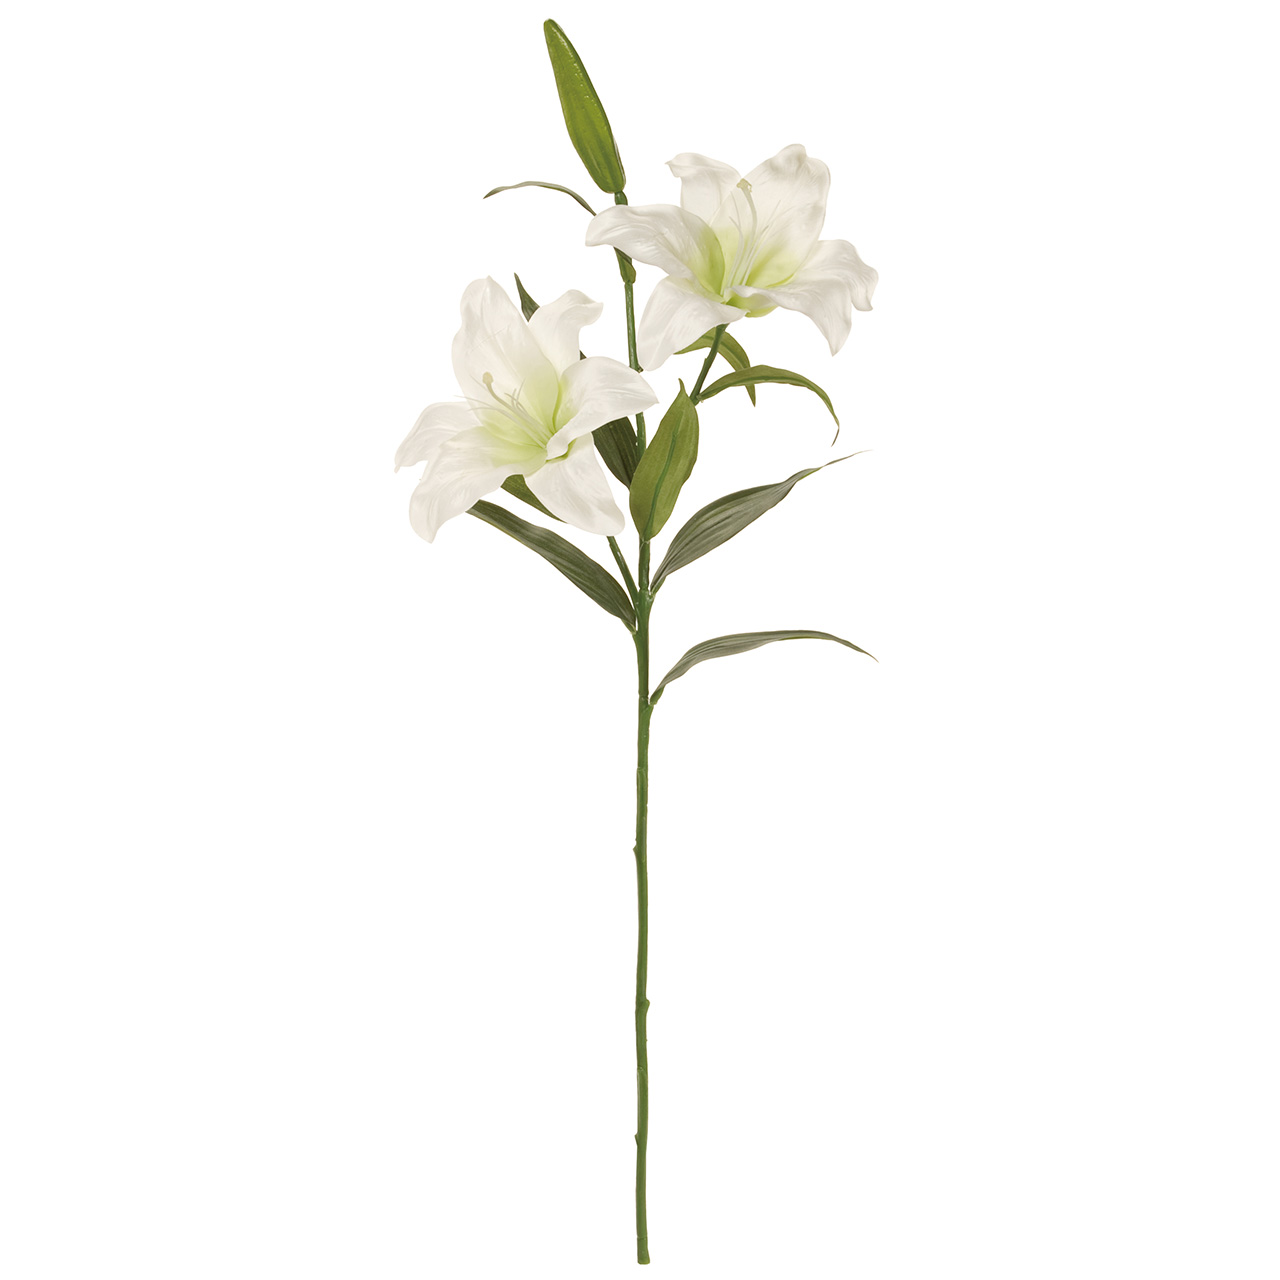 マイフラ 通販 Magiq クレセント カサブランカ ホワイト アーティフィシャルフラワー 造花 ユリ Fm0099 花径 約 全長 約87cm ホワイト Magiq アーティフィシャルフラワー 造花 全国にmagiq 花器 花資材などをお届けします